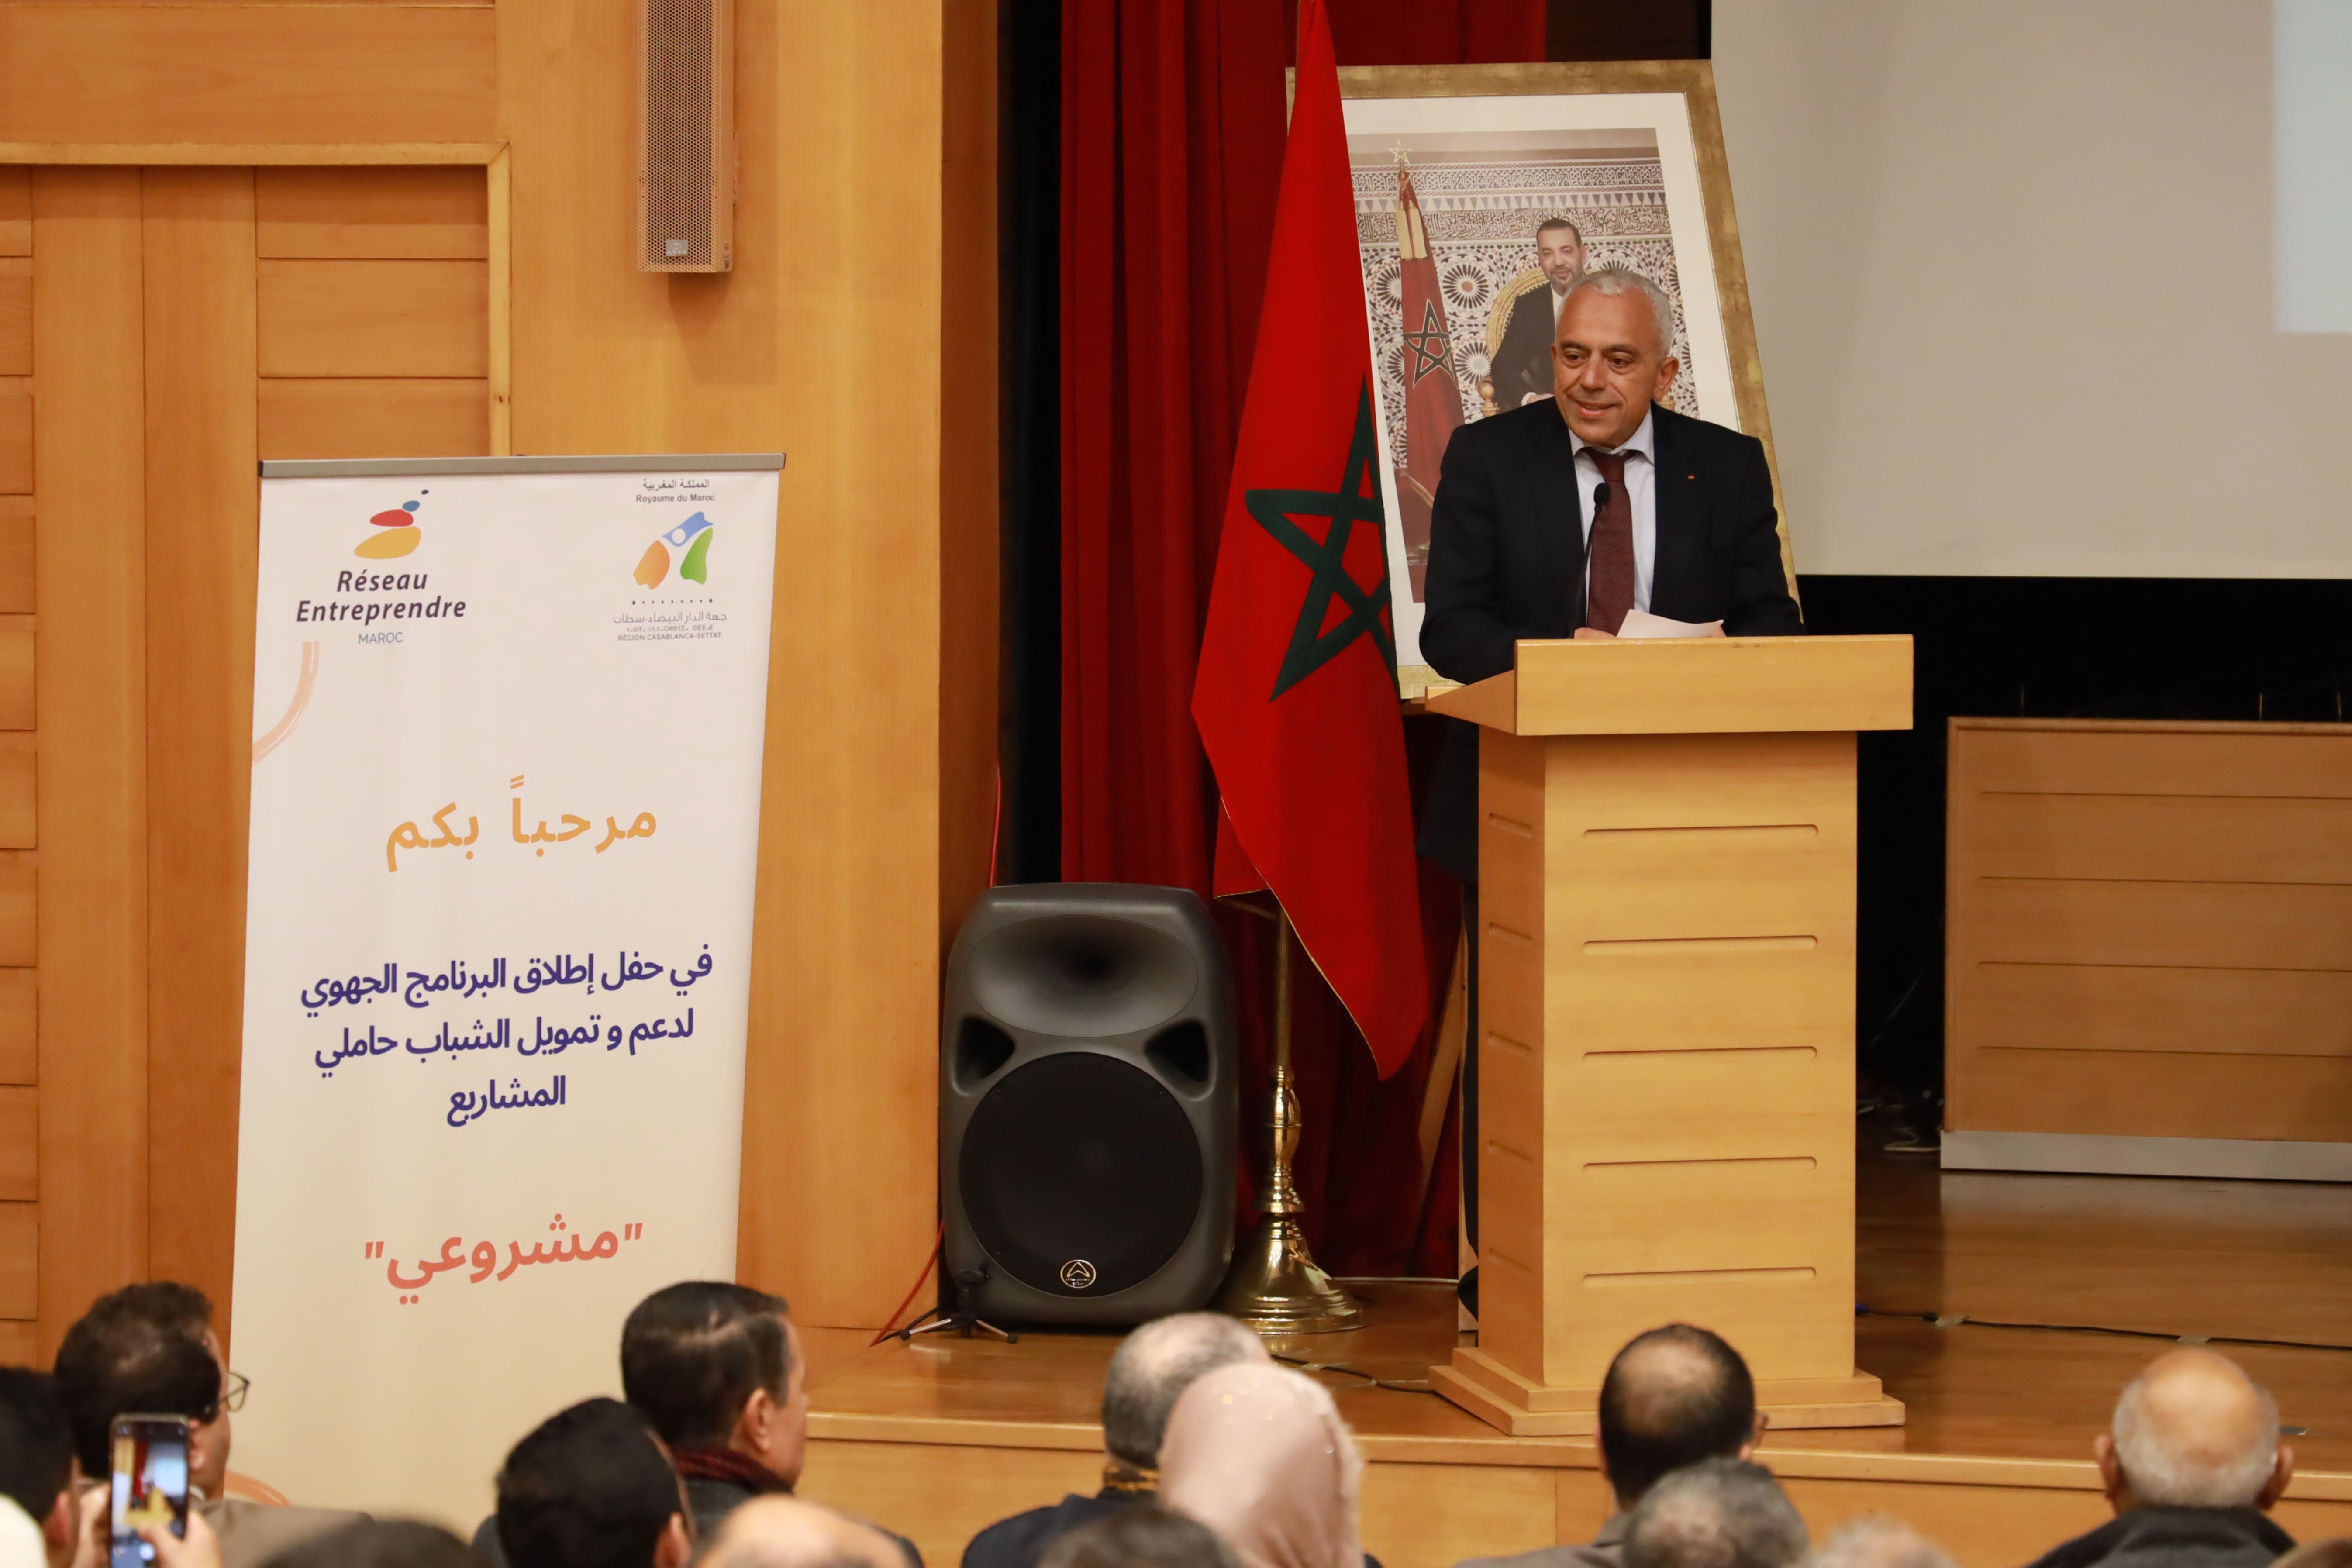 الدار البيضاء - سطات : إطلاق البرنامج الجهوي لمواكبة وتمويل حاملي المشاريع "مشروعي"